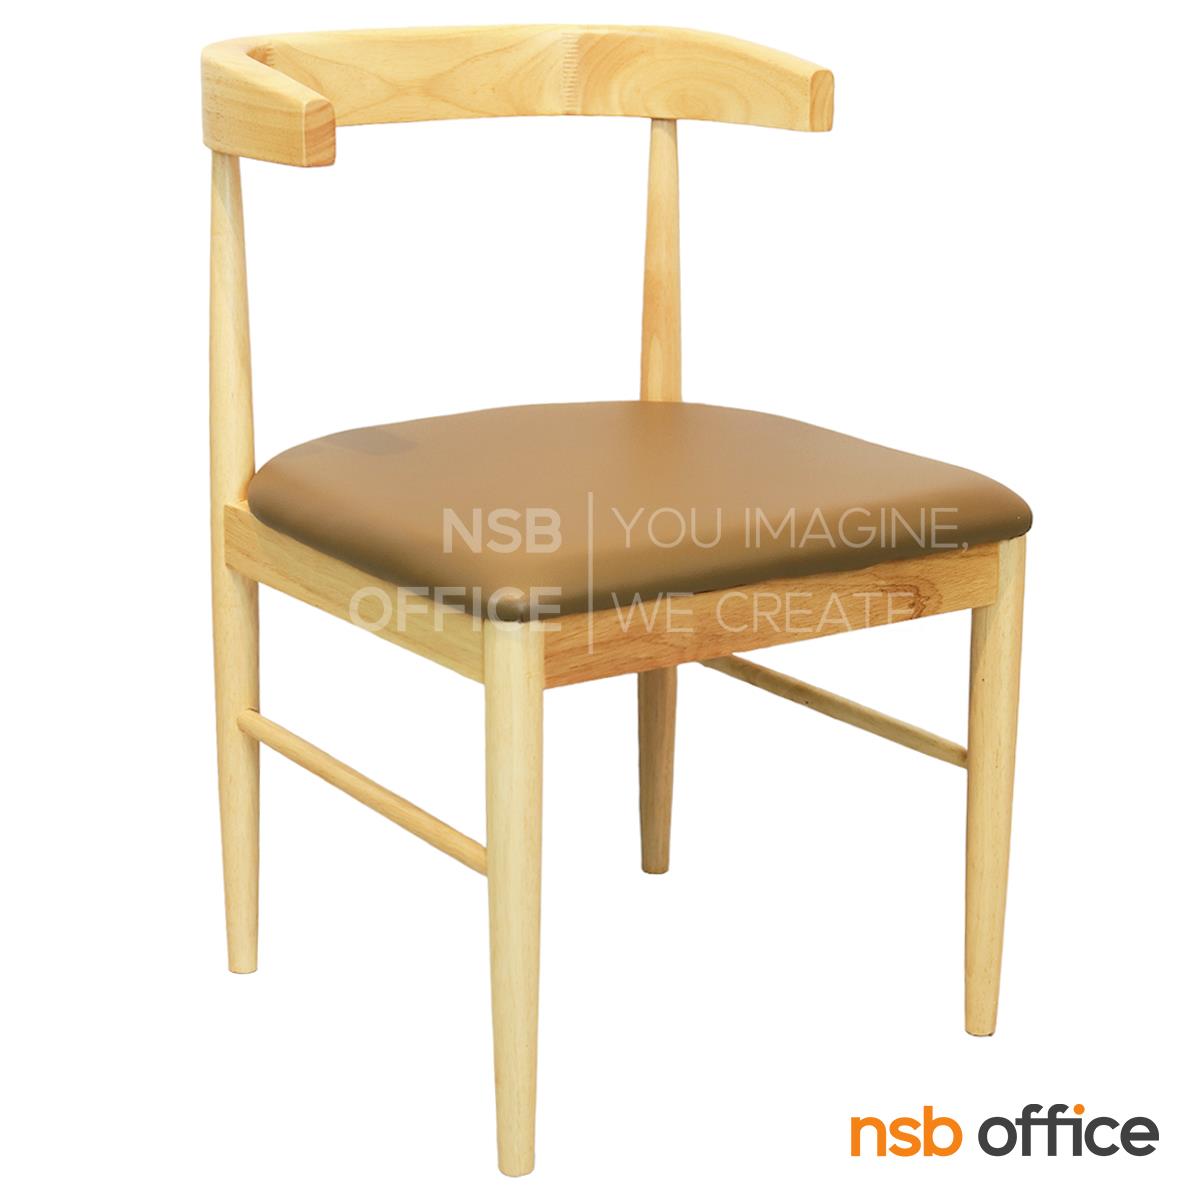 B29A439:เก้าอี้โมเดิร์นหนังเทียม  รุ่น Sydney (ซิดนีย์)  โครงขาไม้